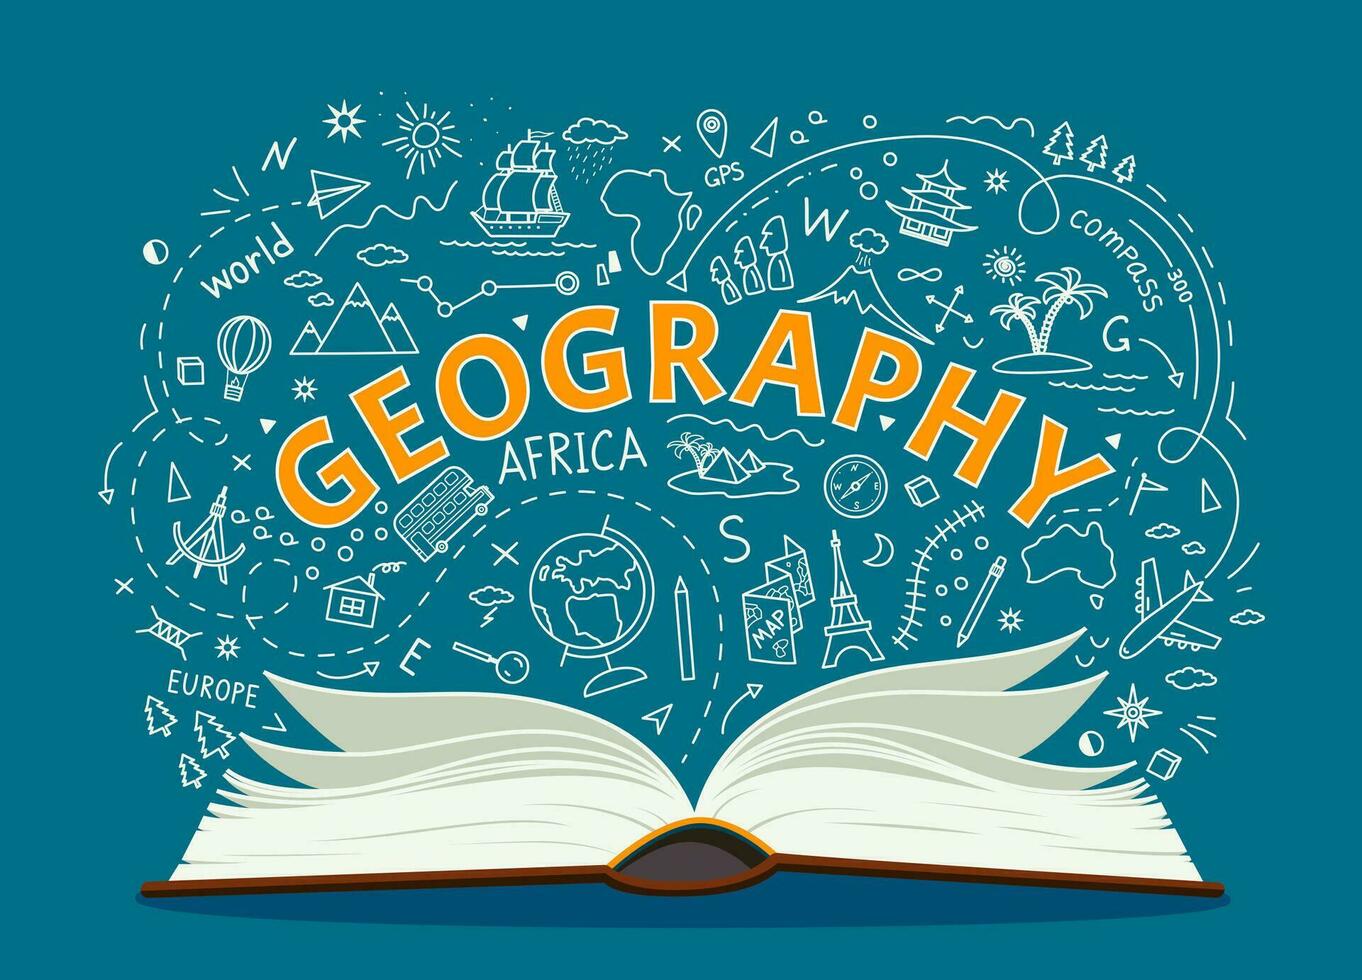 la géographie cahier de texte et symboles de école éducation vecteur